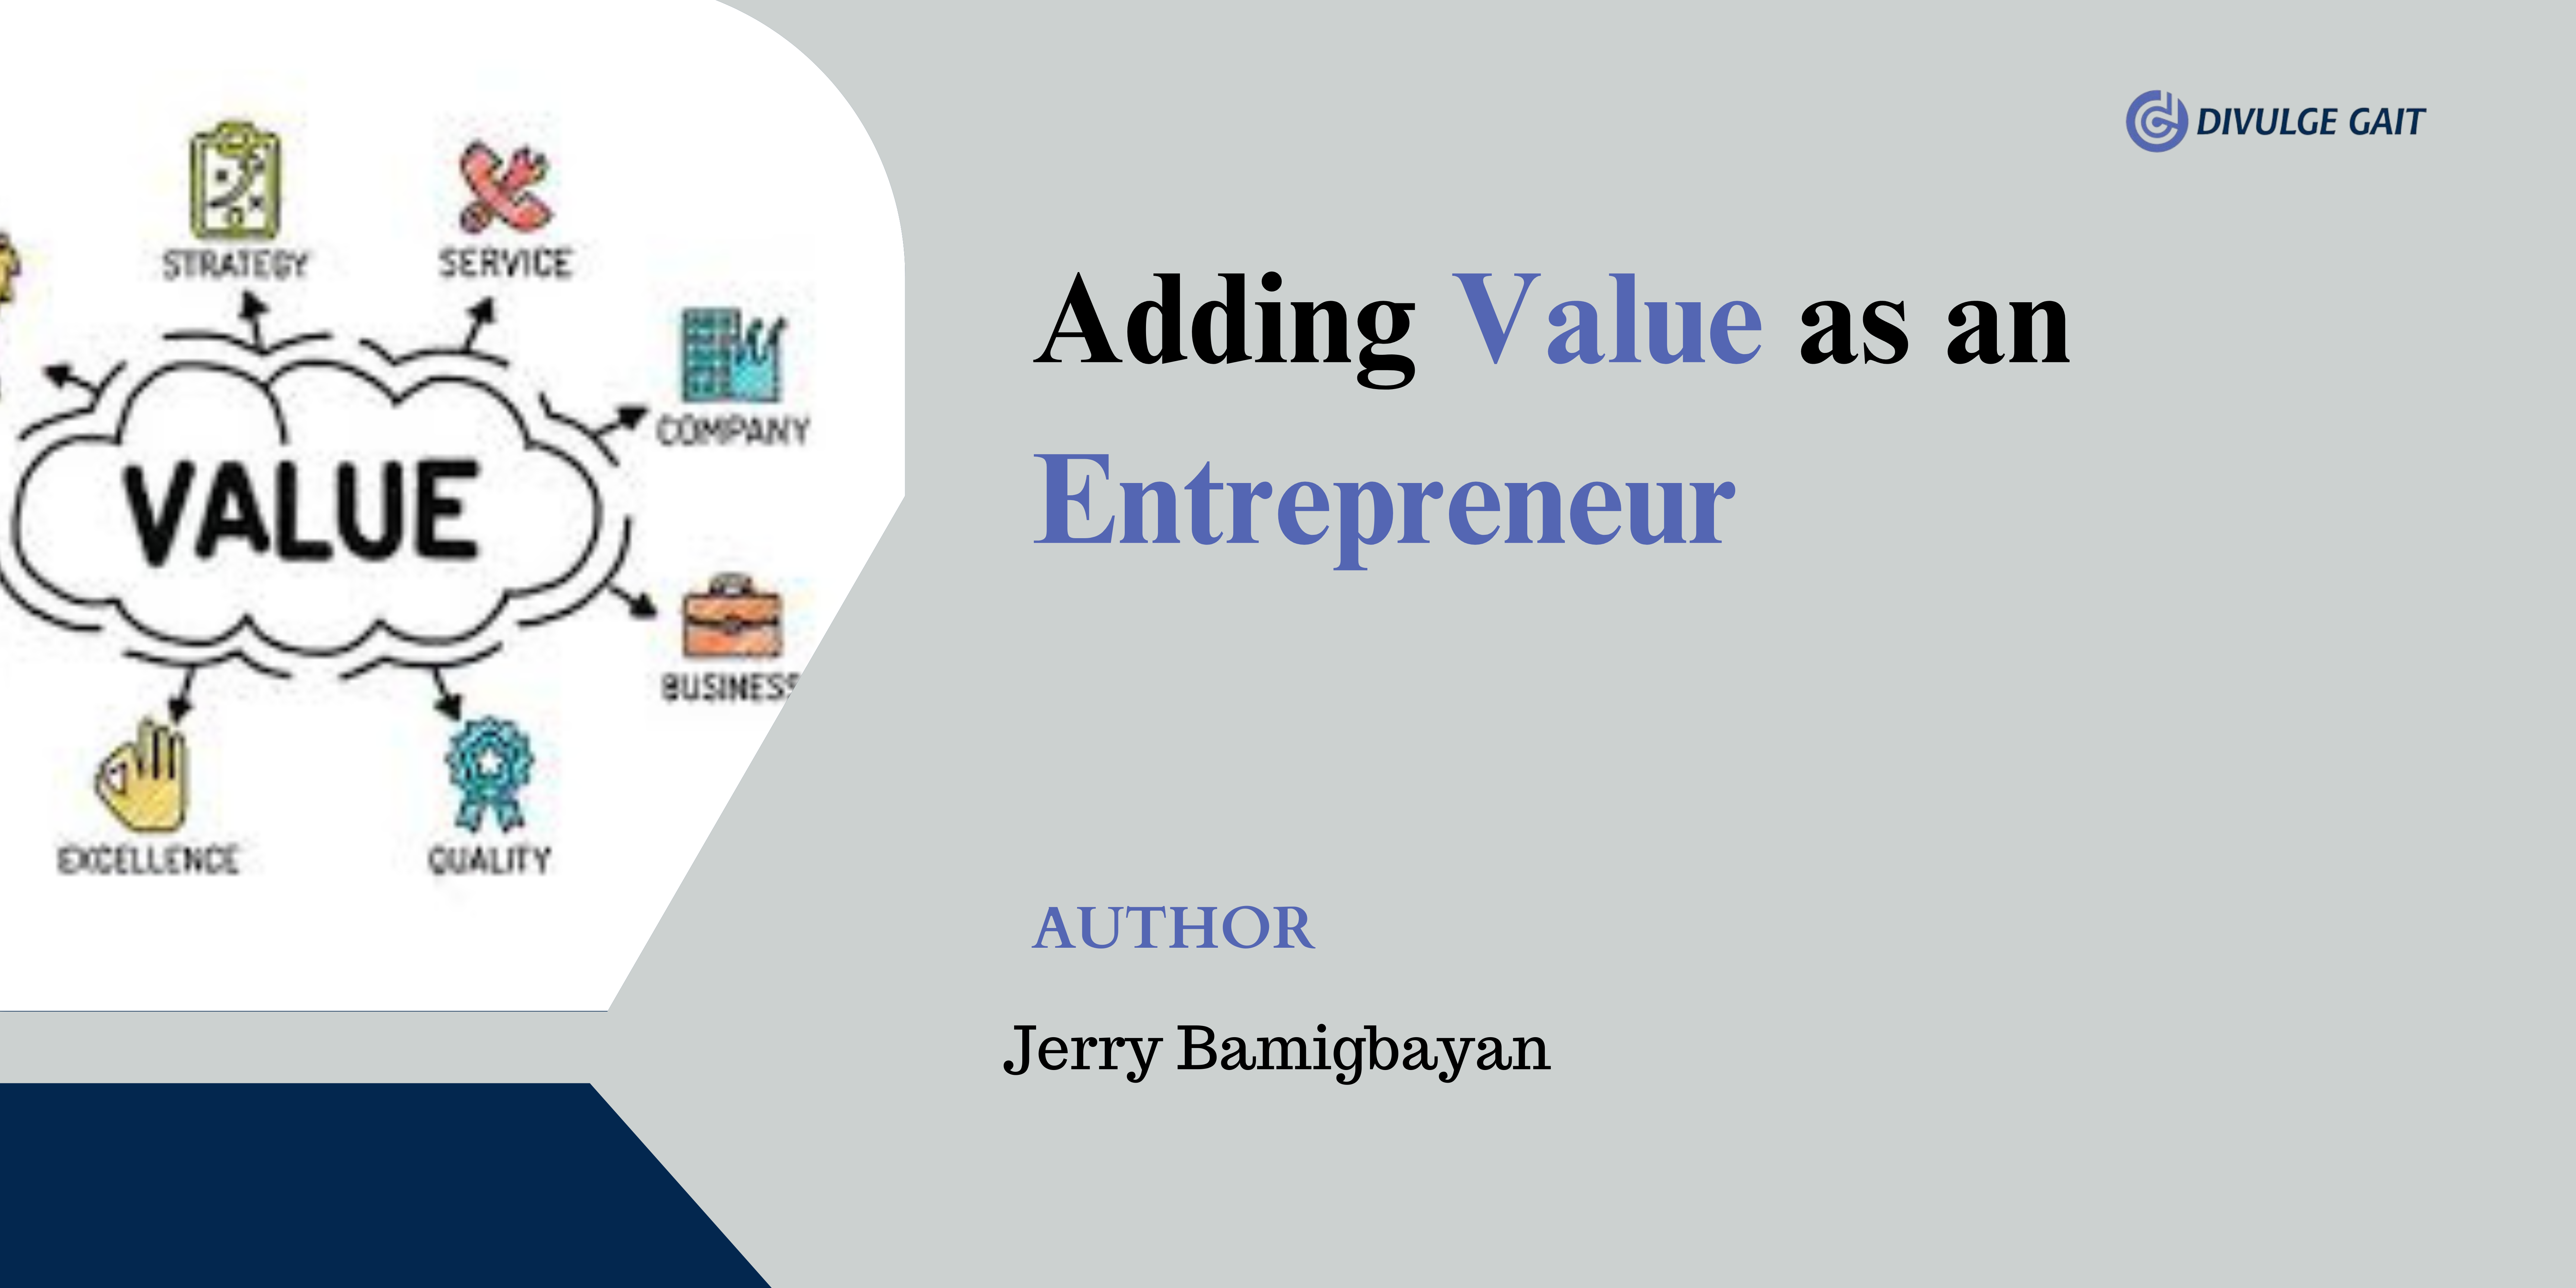 Adding Value as an Entrepreneur